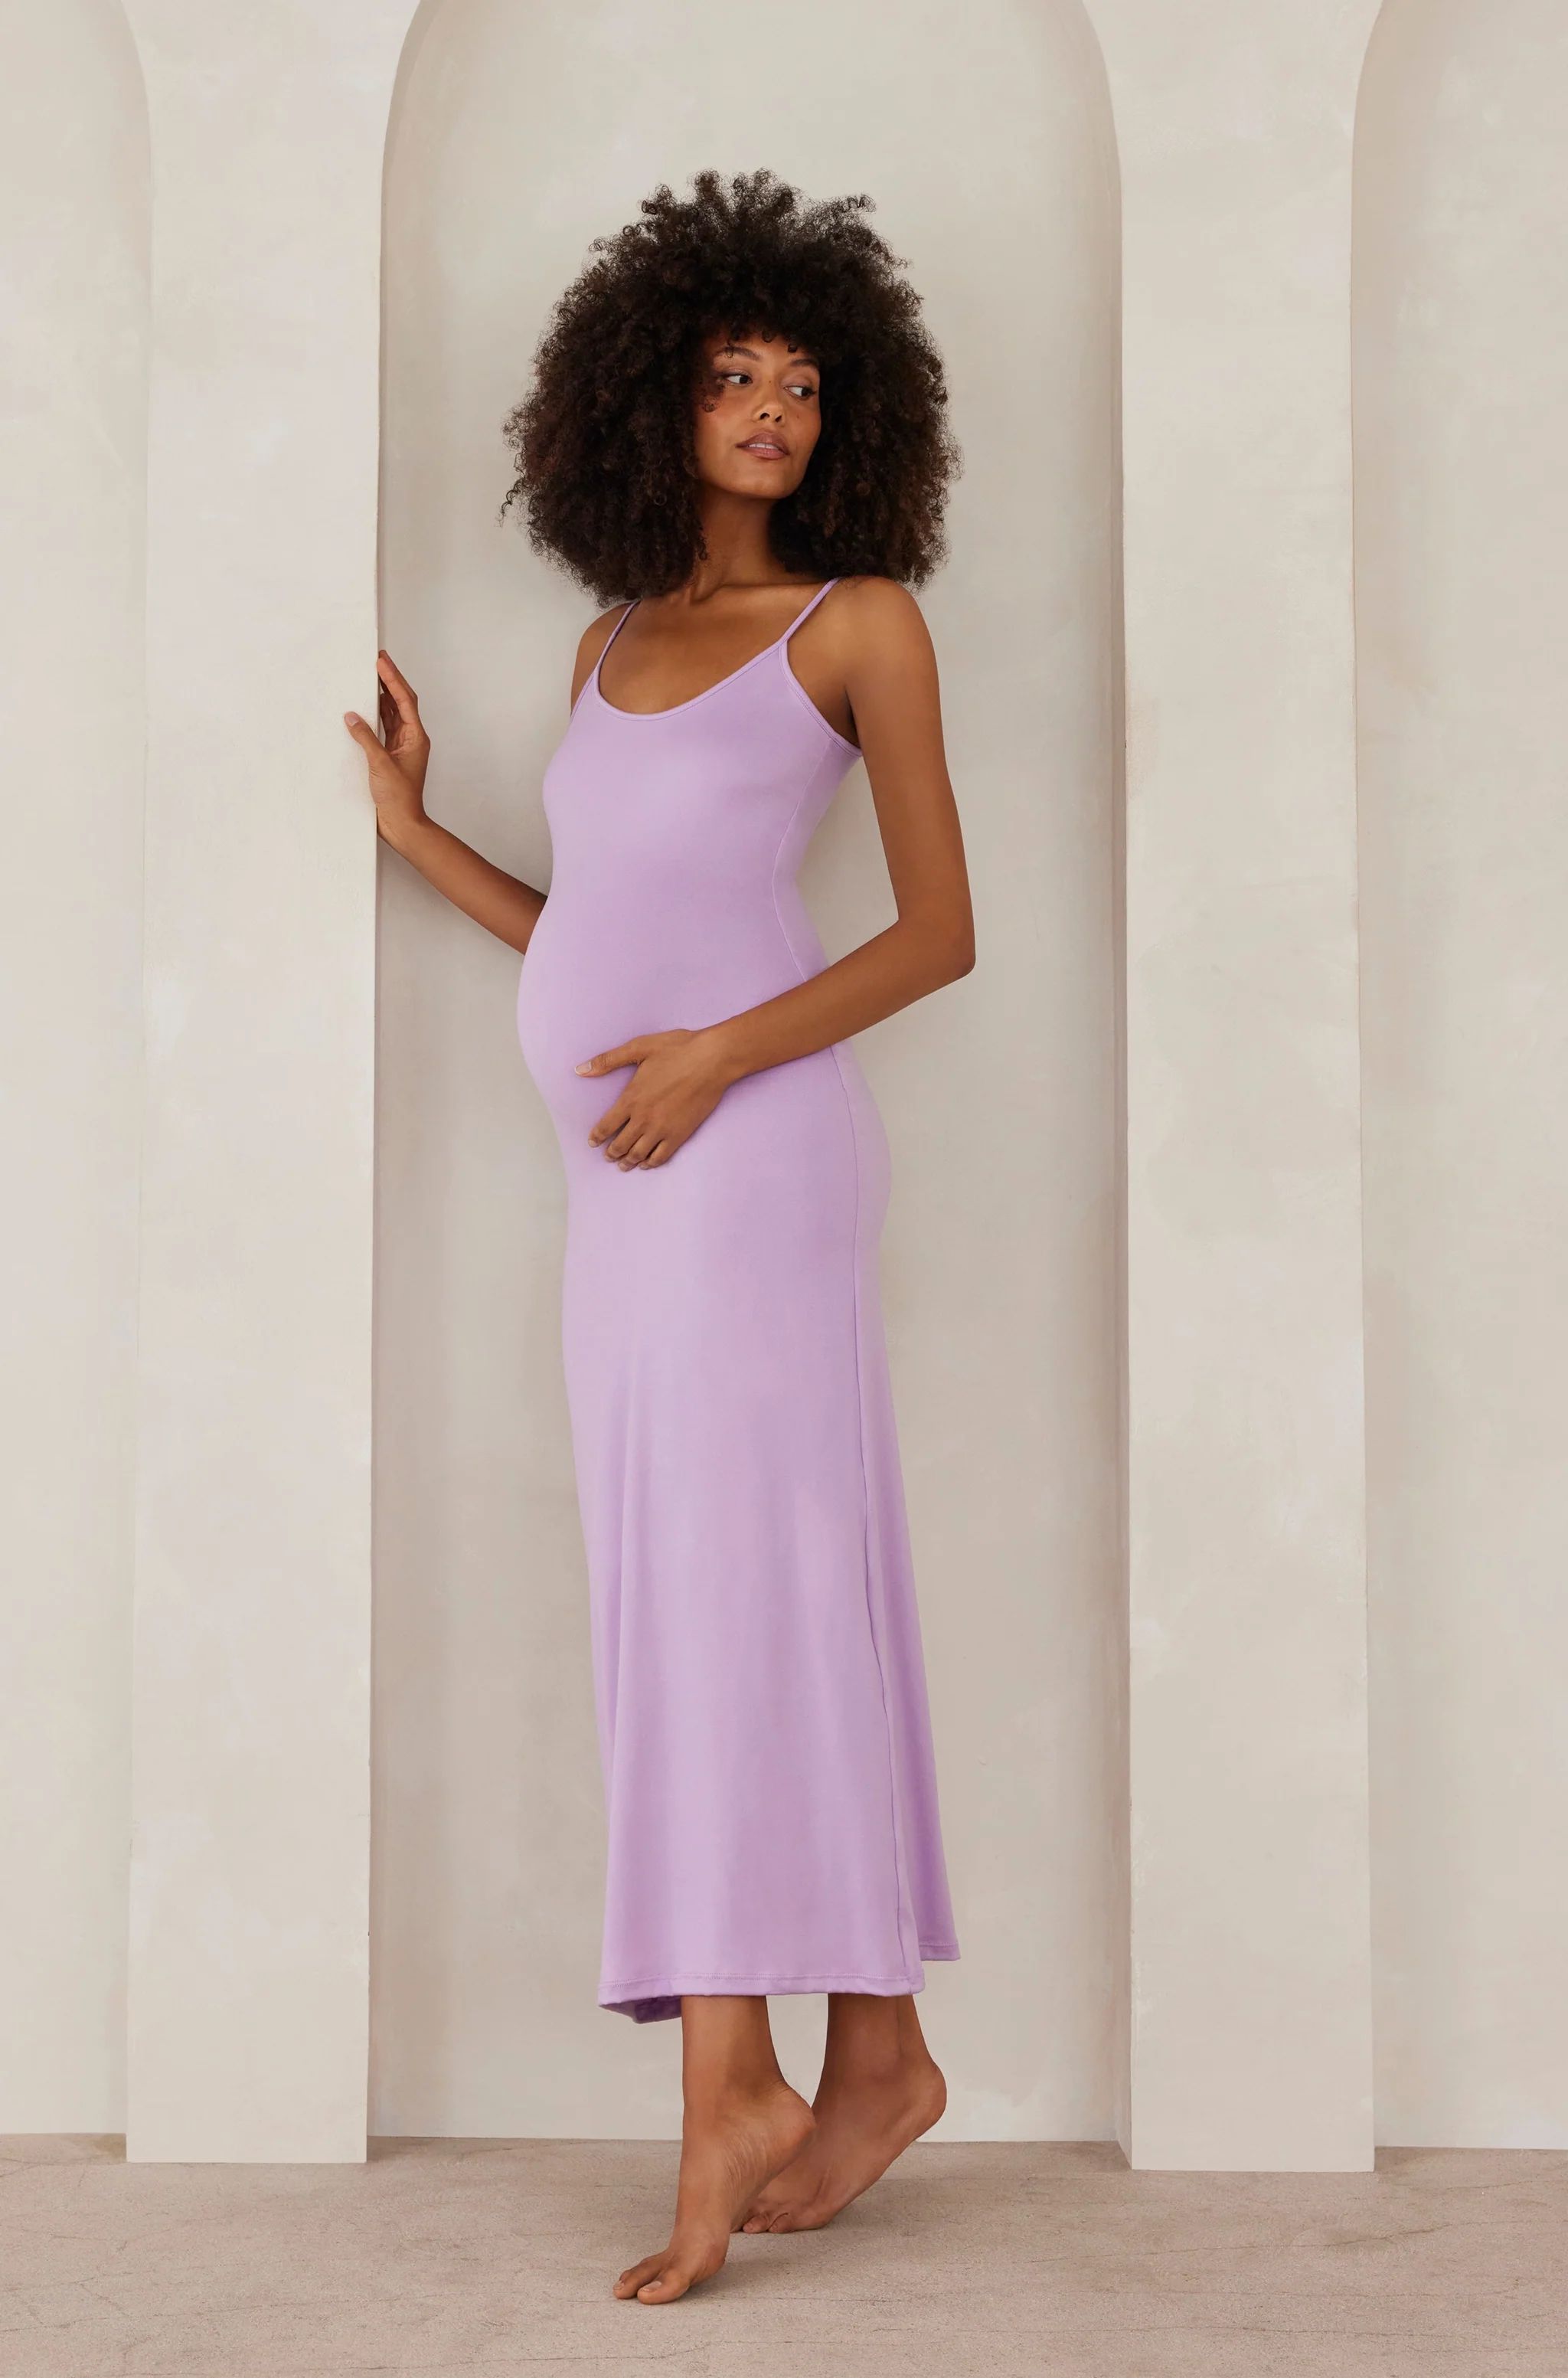 Shop The Jane | Women's Soft Jersey Maternity Dress | Bumpsuit | BUMPSUIT